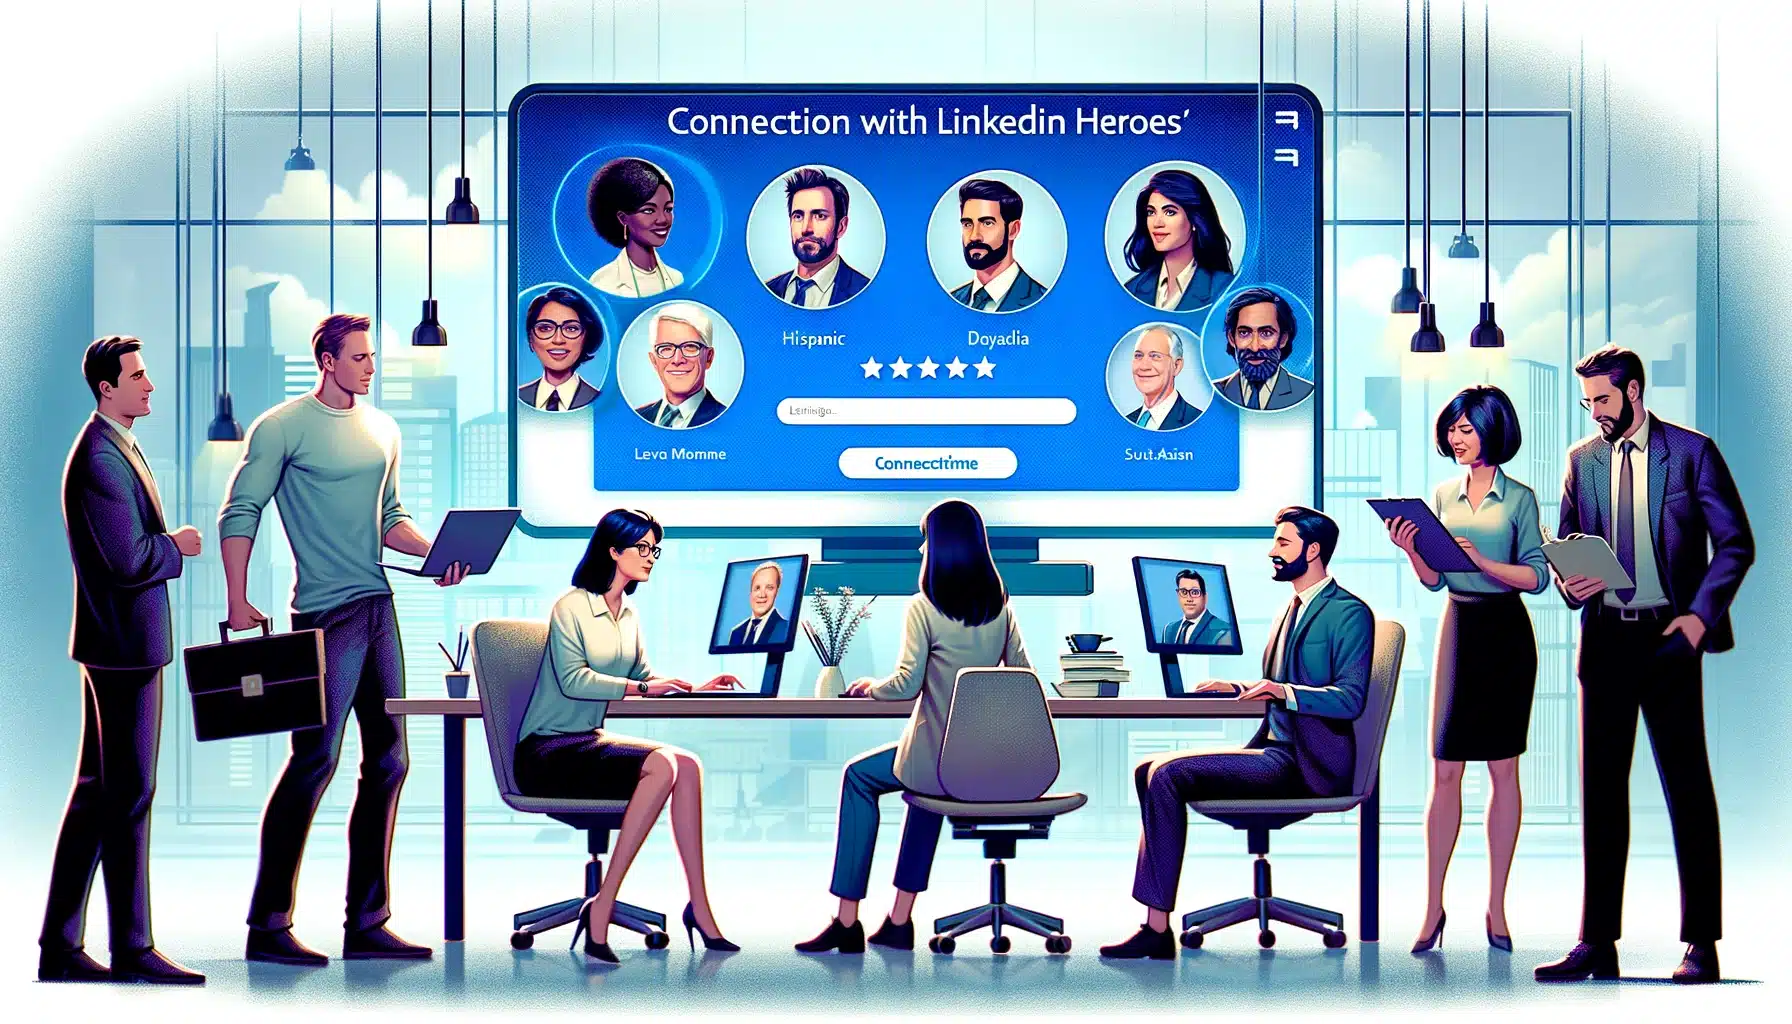 Connexion avec les héros LinkedIn